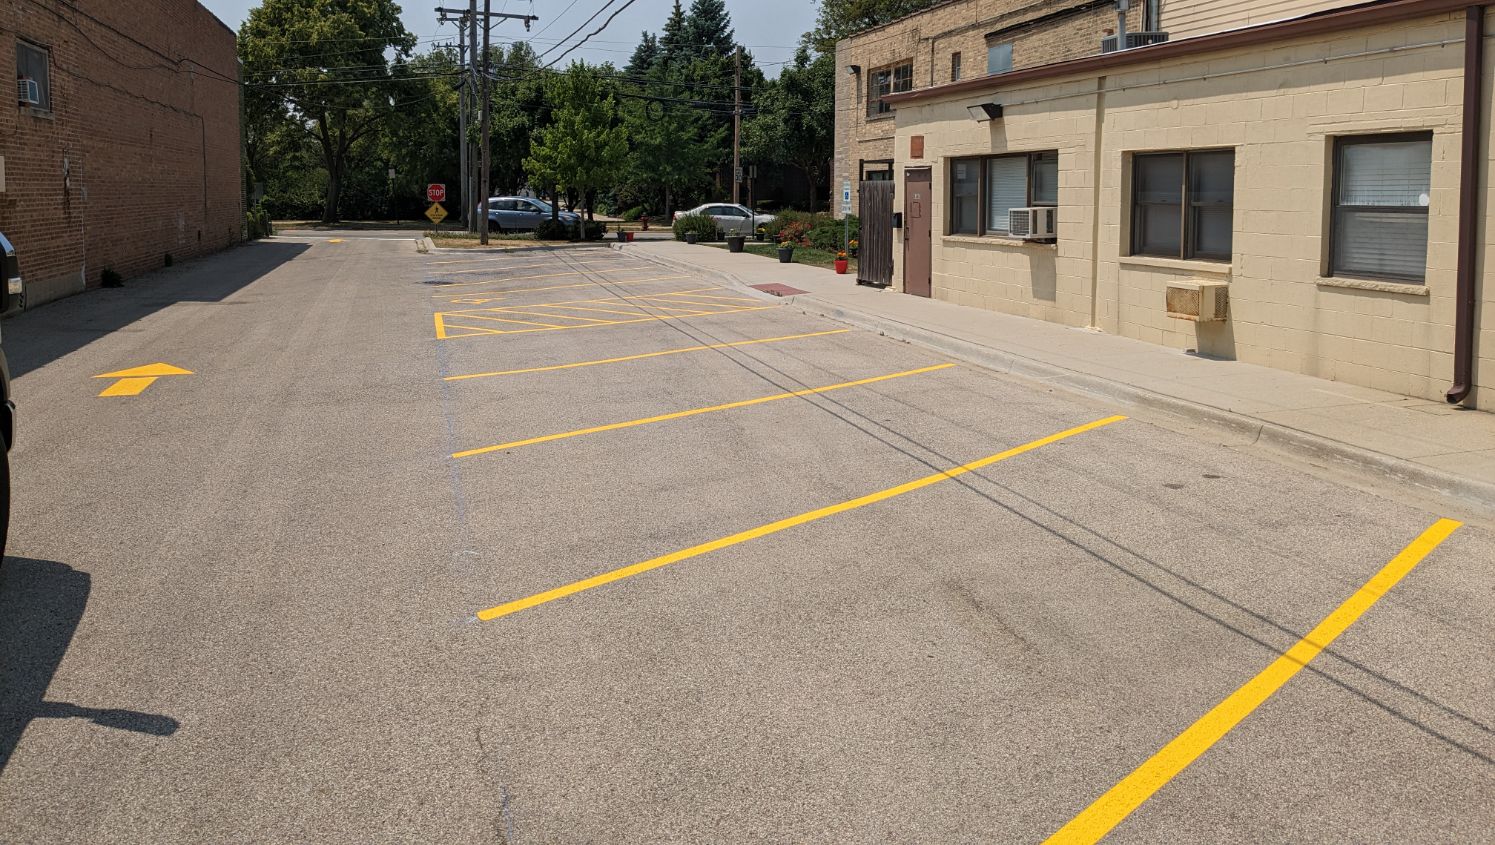 c.a.r.e parking lot striping in Skokie, IL